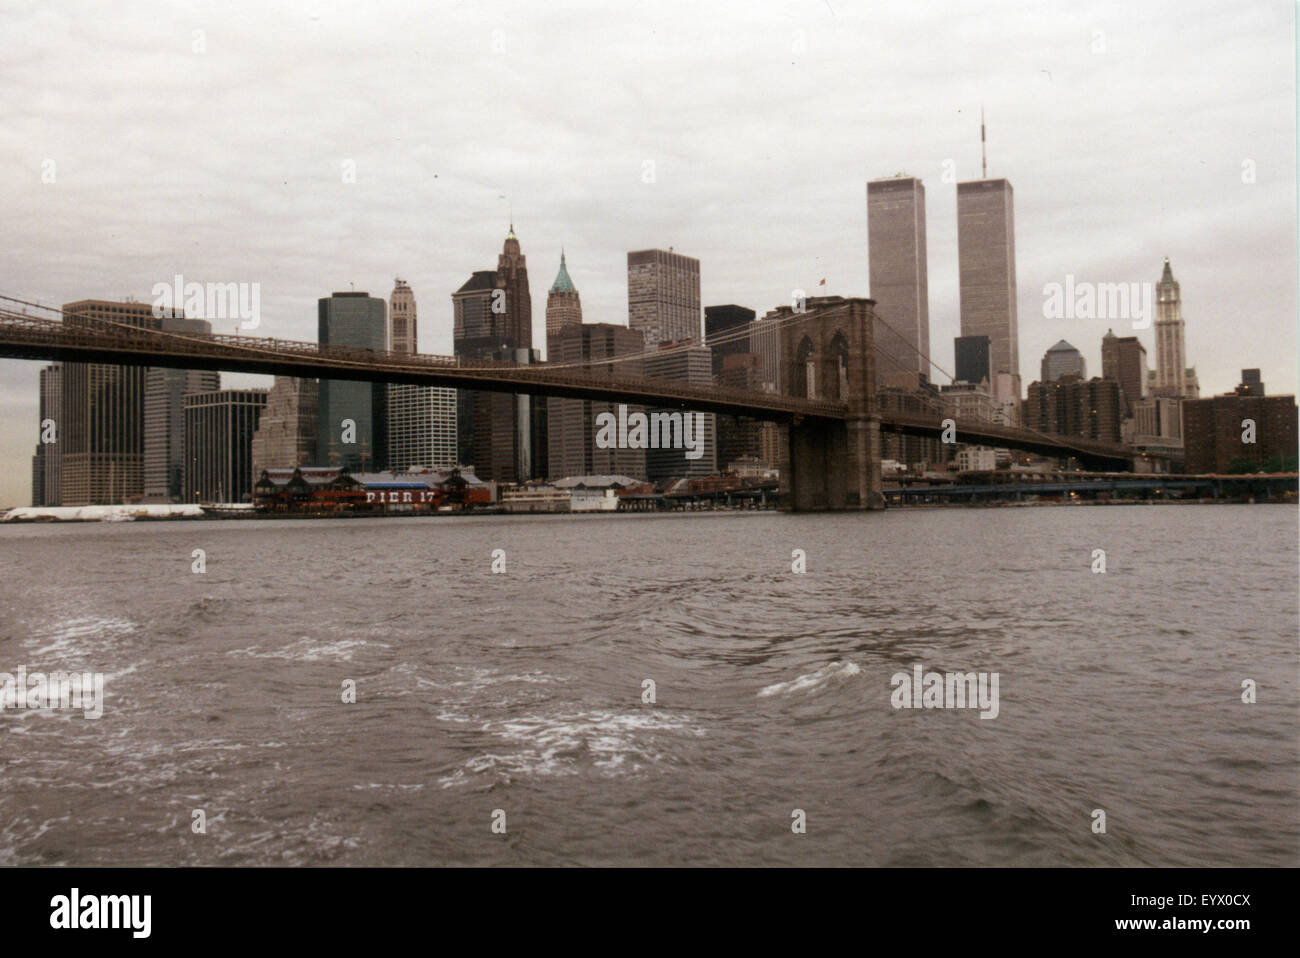 Juli 1995 - NEW YORK: die Skyline von Manhattan mit den Zwillingstürmen des World Trade Center und die Brooklyn Bridge, Manhattan Stockfoto